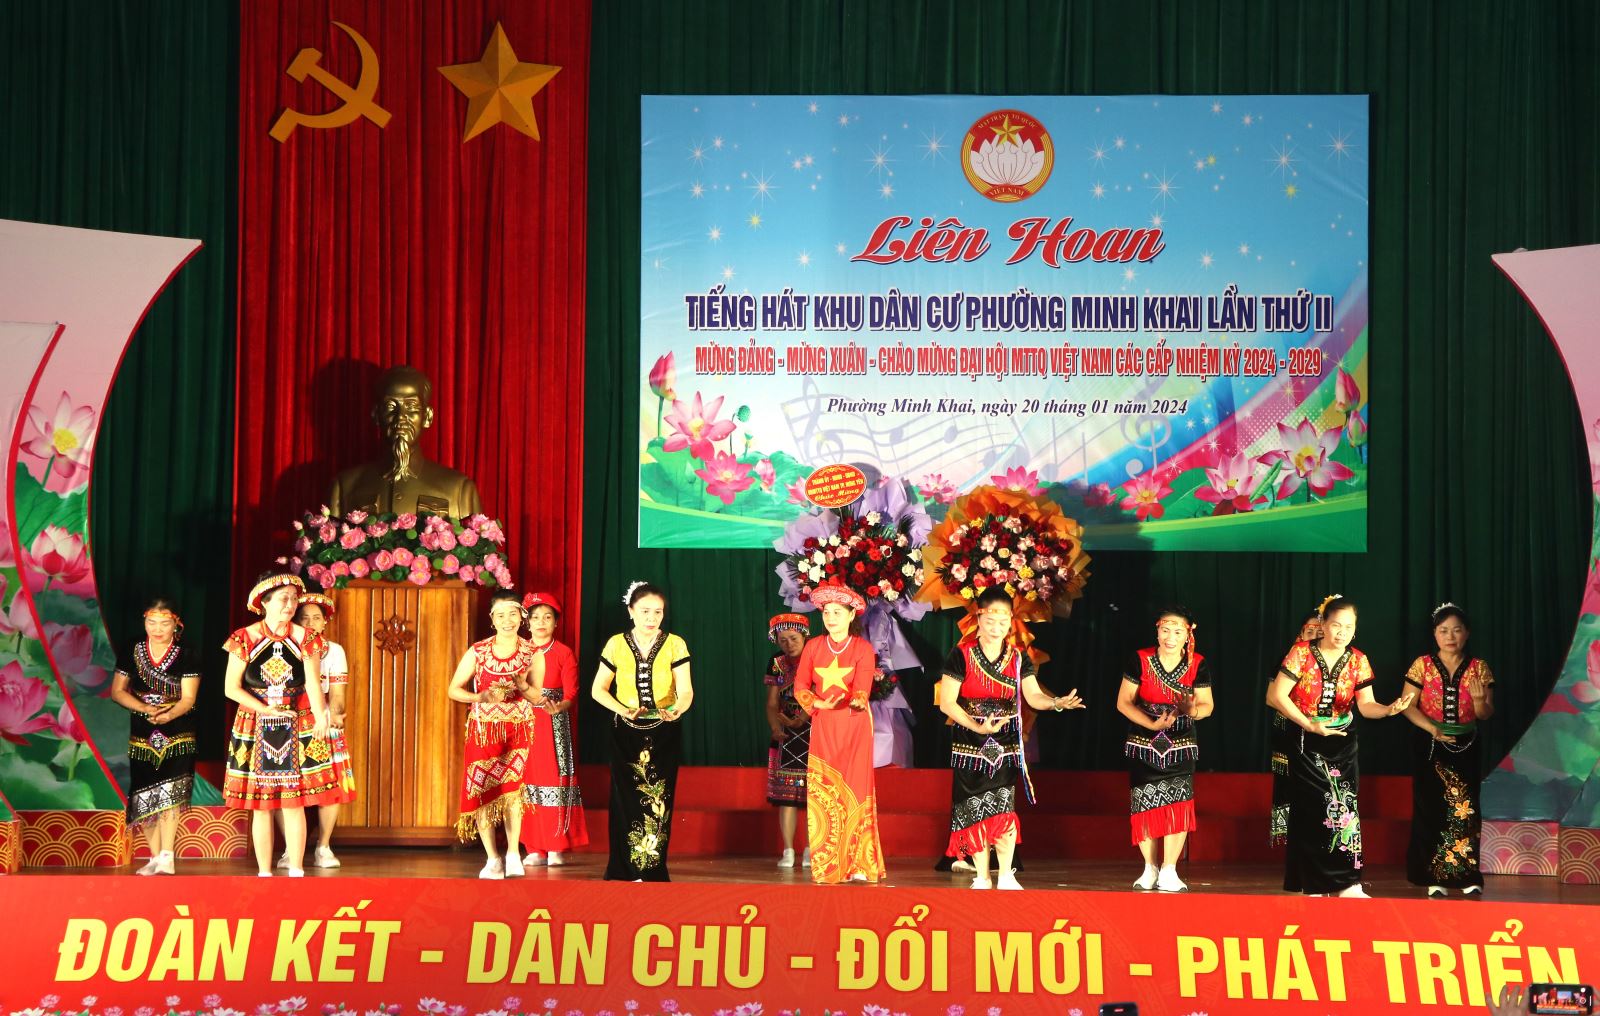 Phường Minh Khai - thành phố Hưng Yên tổ chức liên hoan tiếng hát khu dân cư kỷ niệm 94 năm thành lập Đảng cộng sản Việt Nam